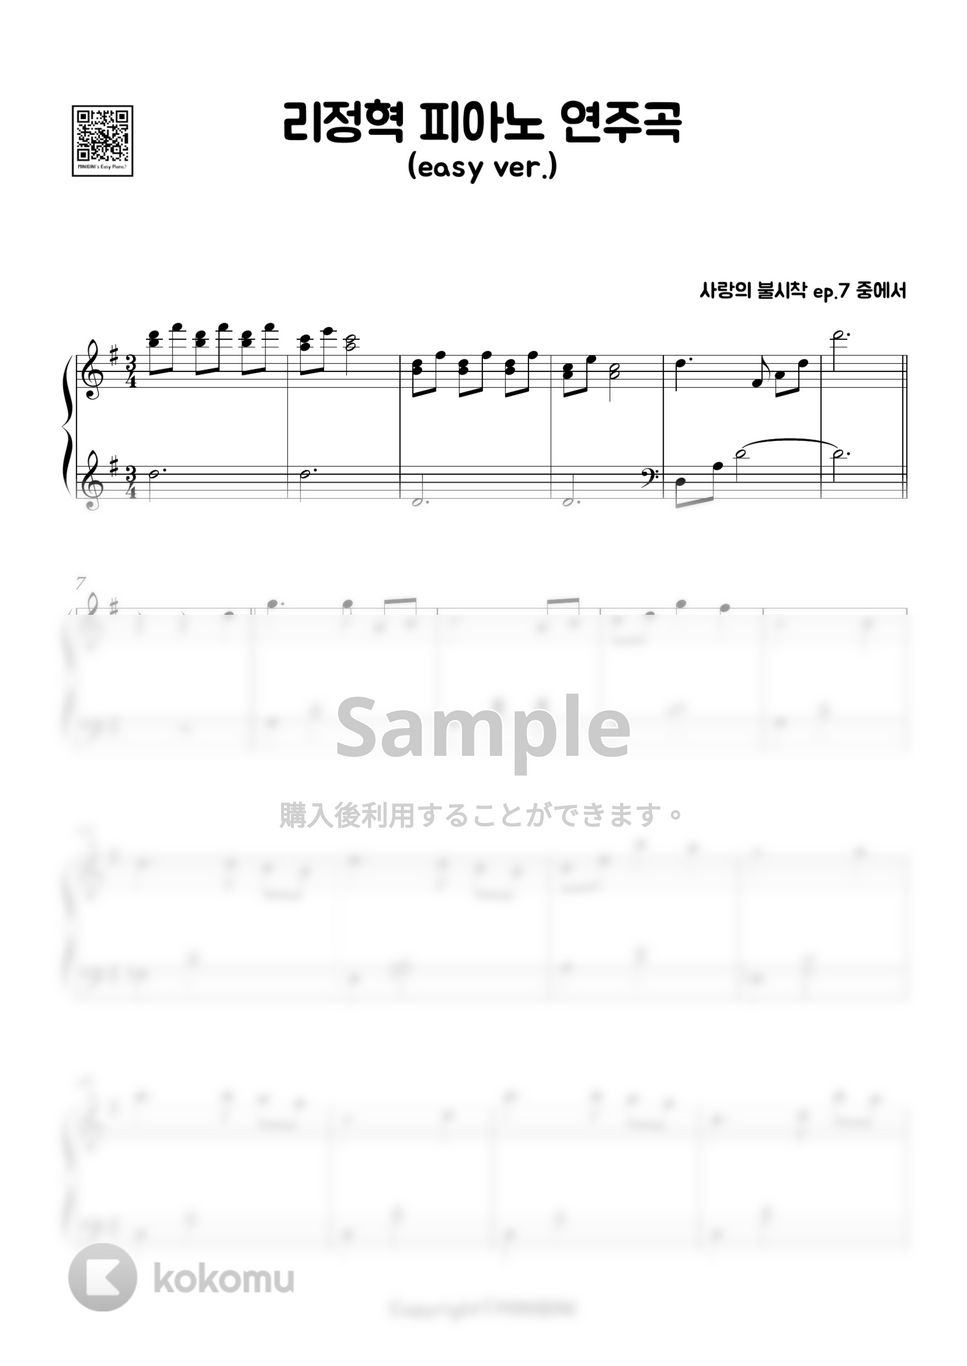 愛の不時着 OST - 兄のための歌(feat. ジョンヒョク) (Easy ver.) by MINIBINI